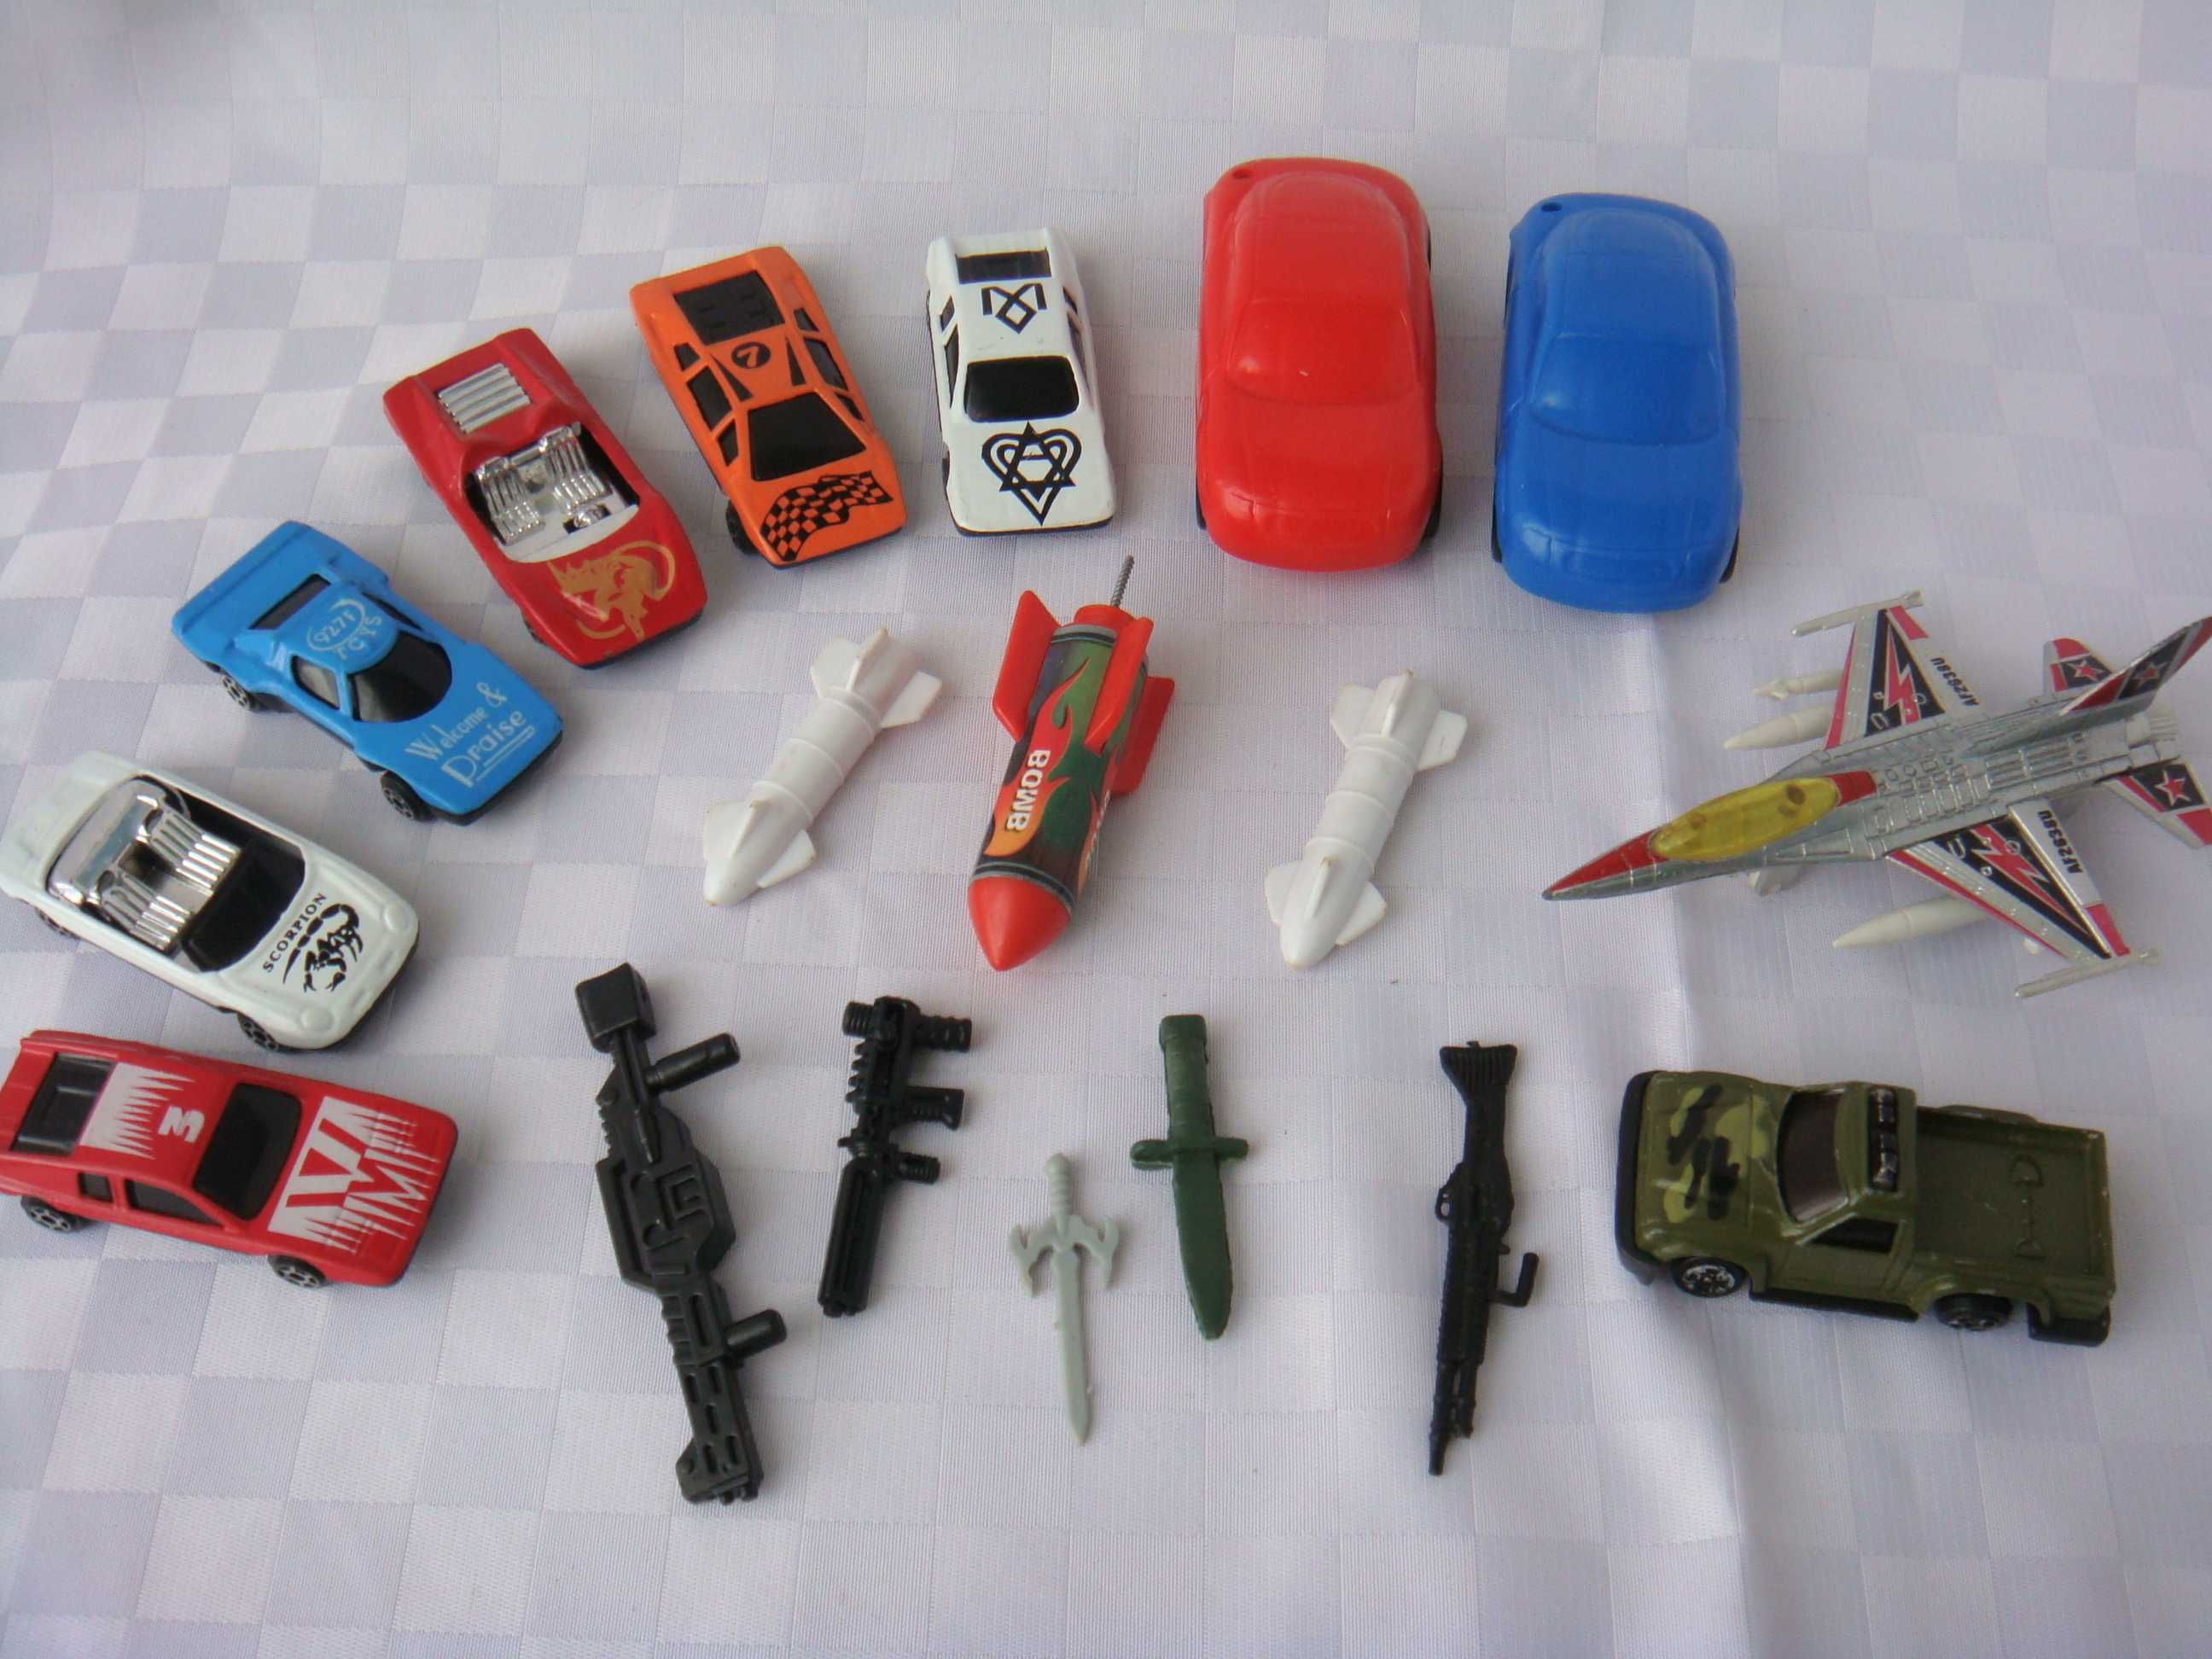 Игрушки: самолет, машинки, оружие - всё за 150 гривен.